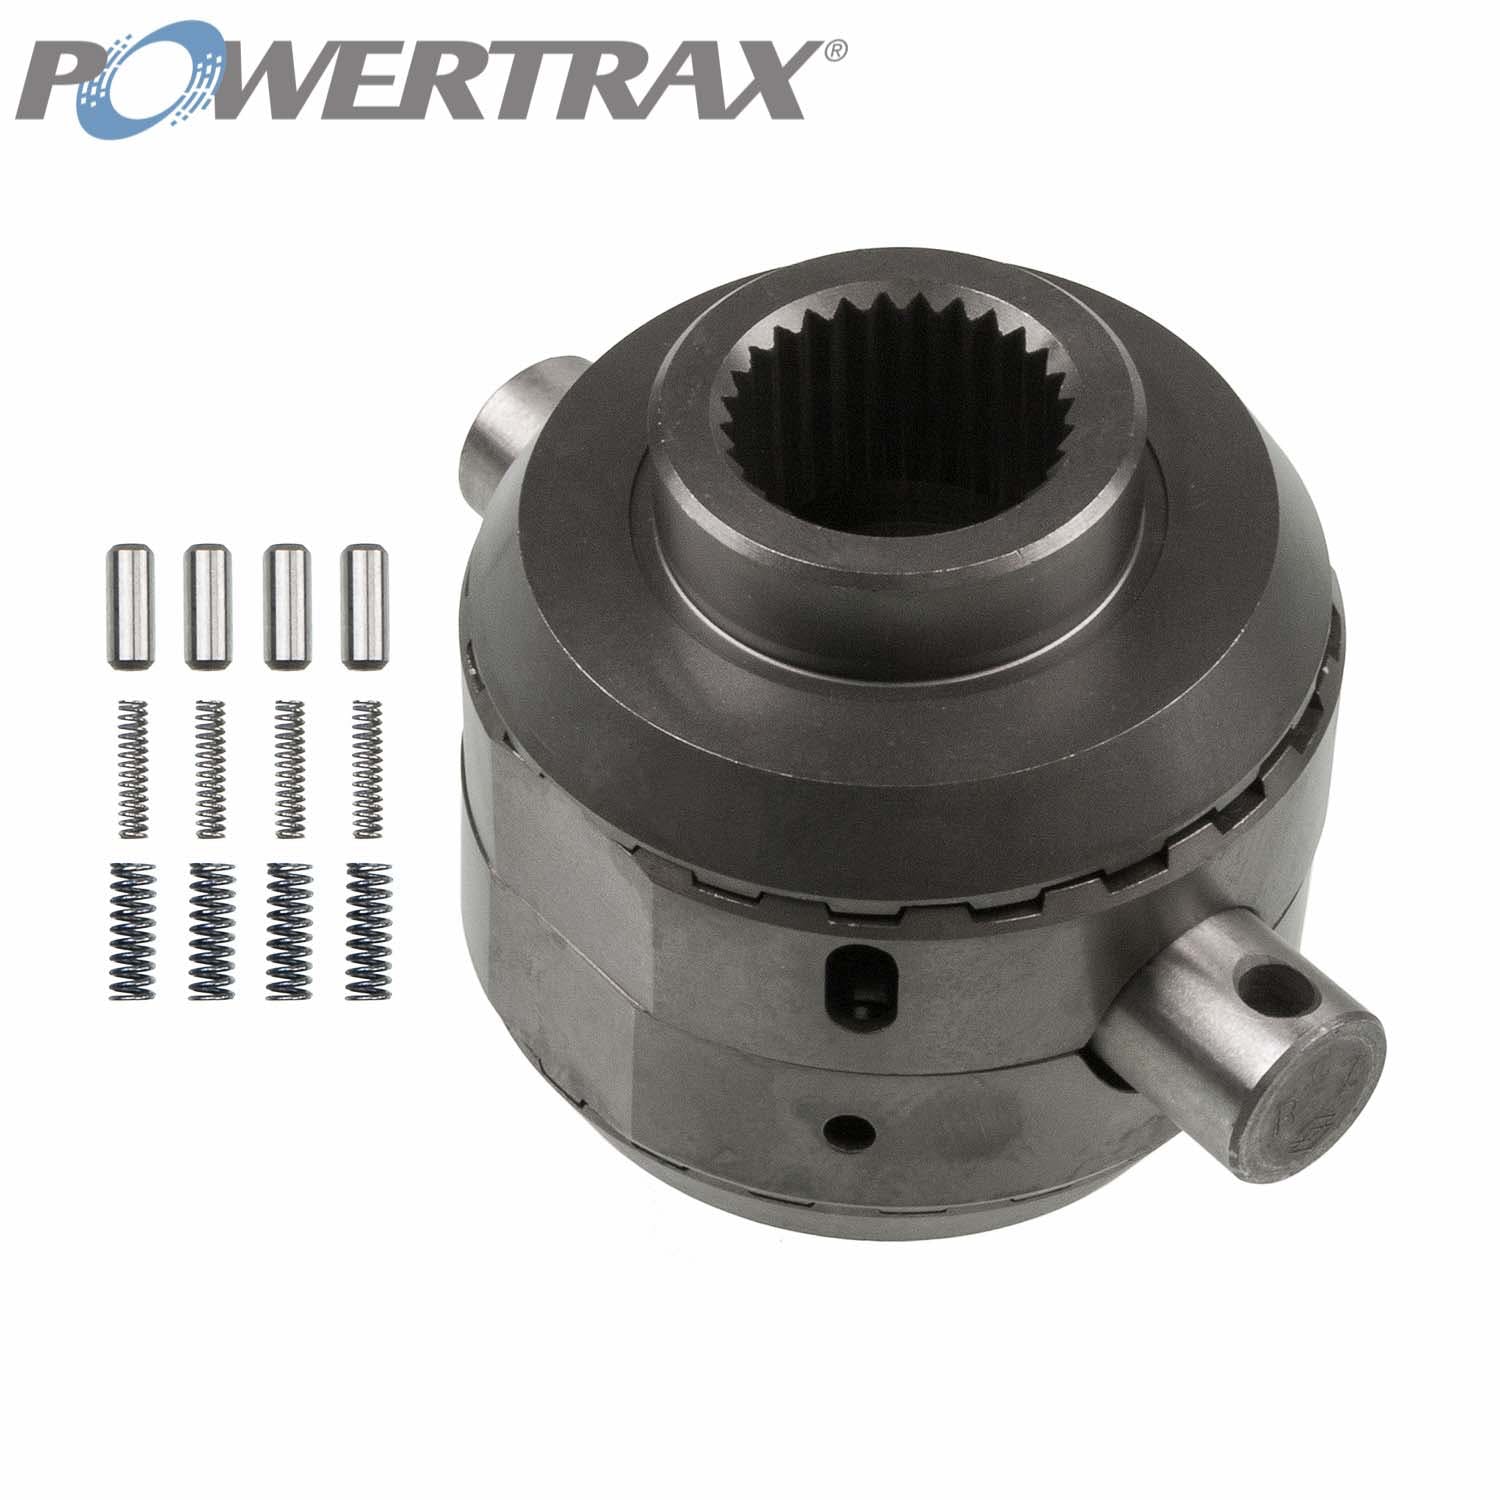 PowerTrax 1830-LR Lock Right Locker